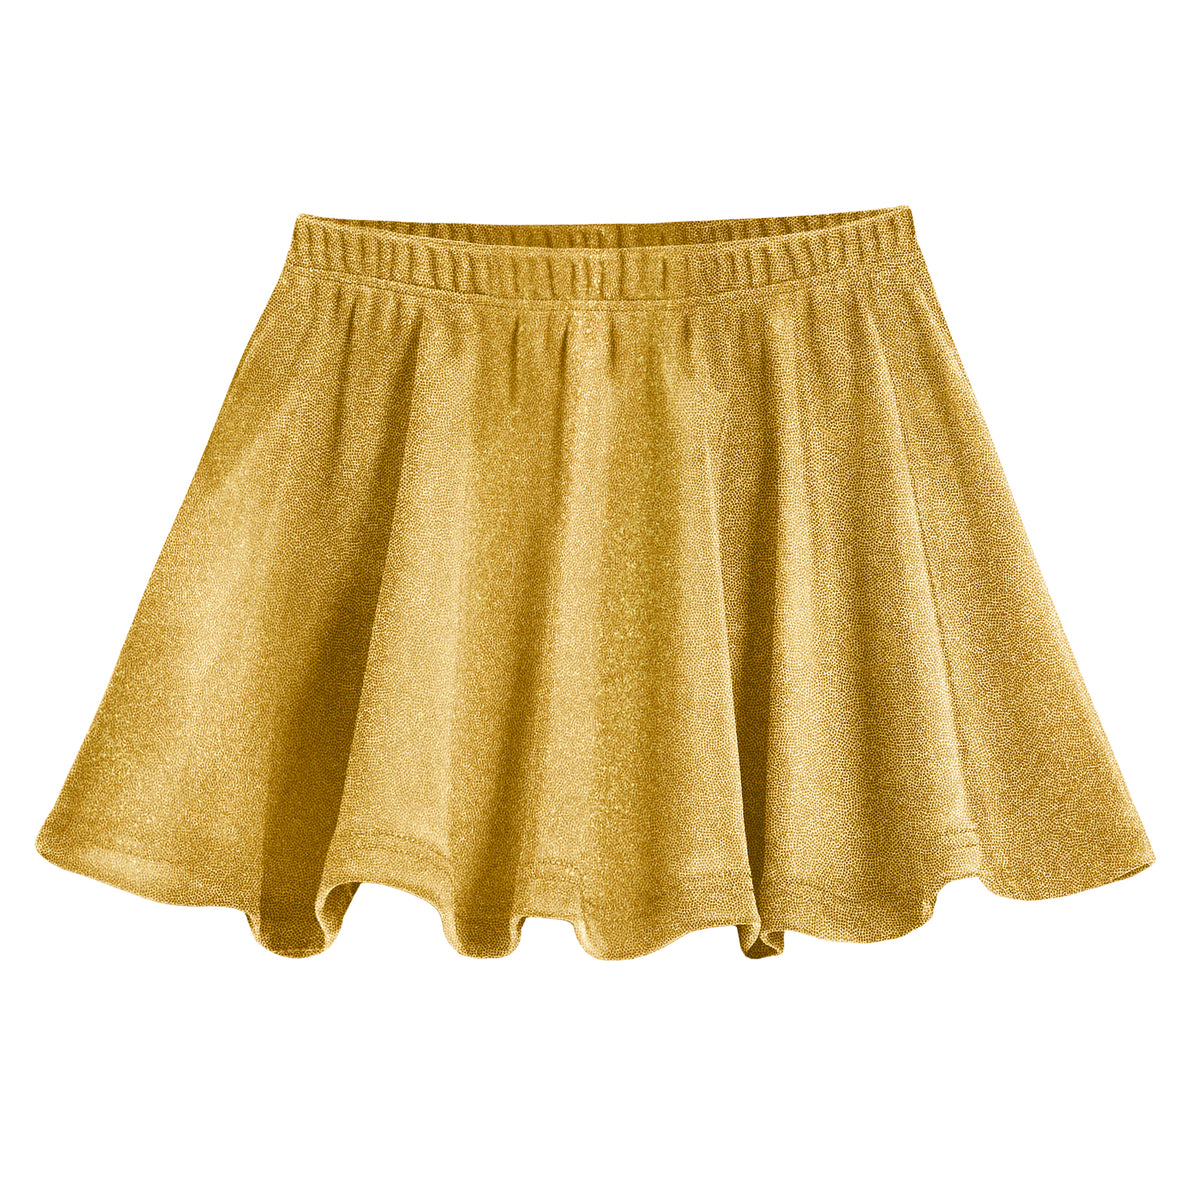 Girls Novelty Circle Skirt | Gold Sparkly Shimmer